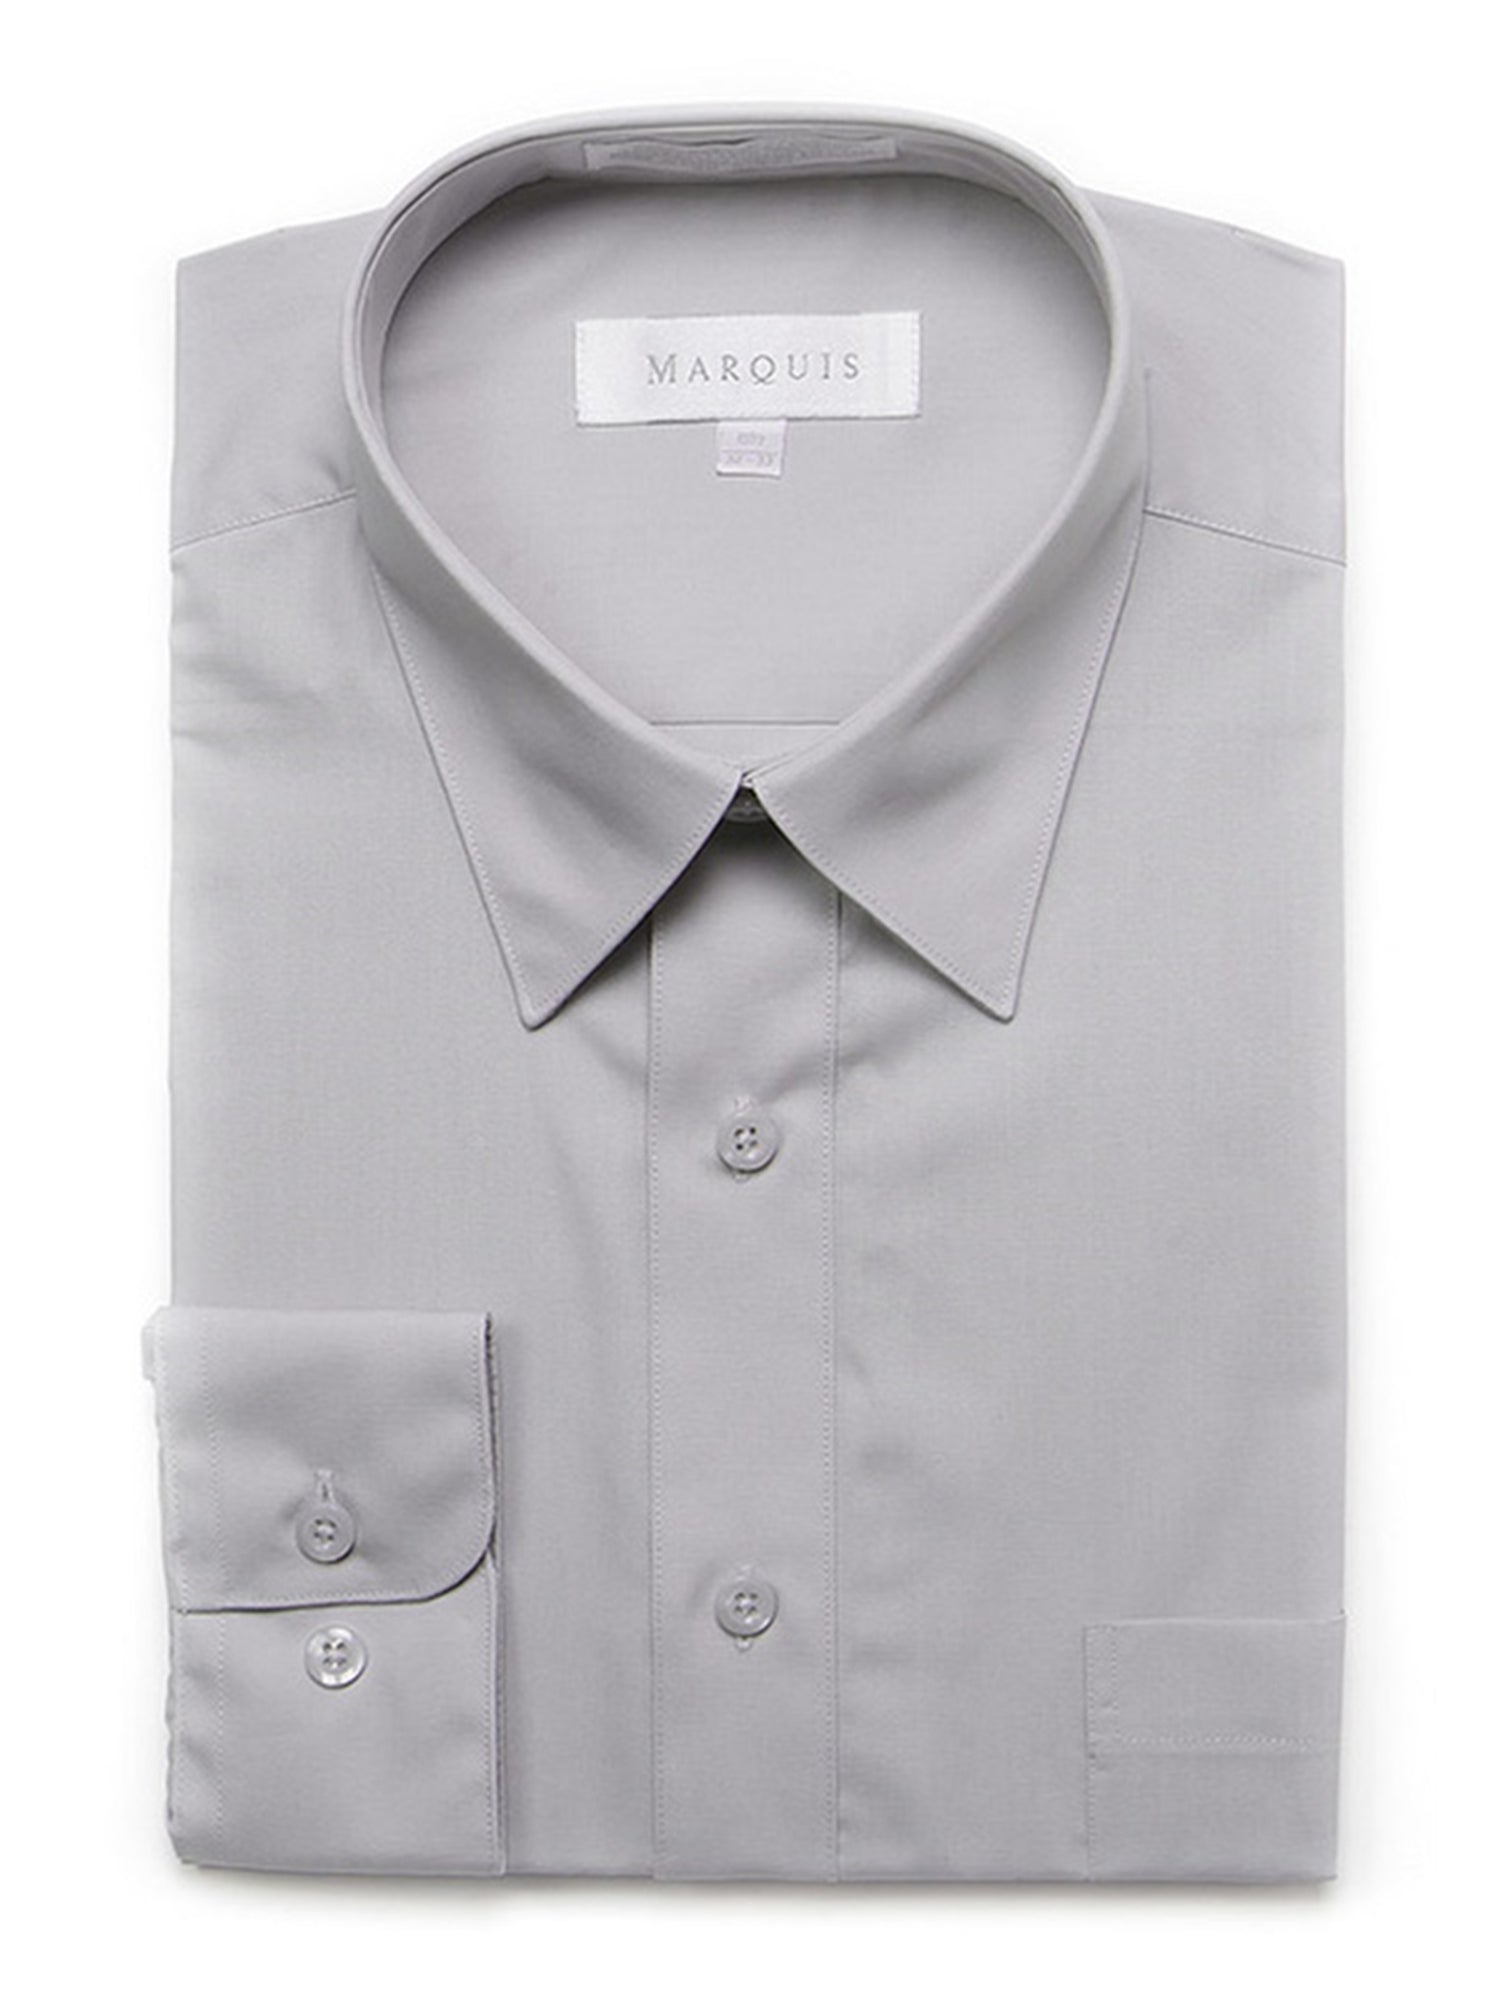 Marquis Men's Long Sleeve Regular Fit Dress Shirt Dress Shirt Marquis Silver 14.5 Neck 32/33 Sleeve 